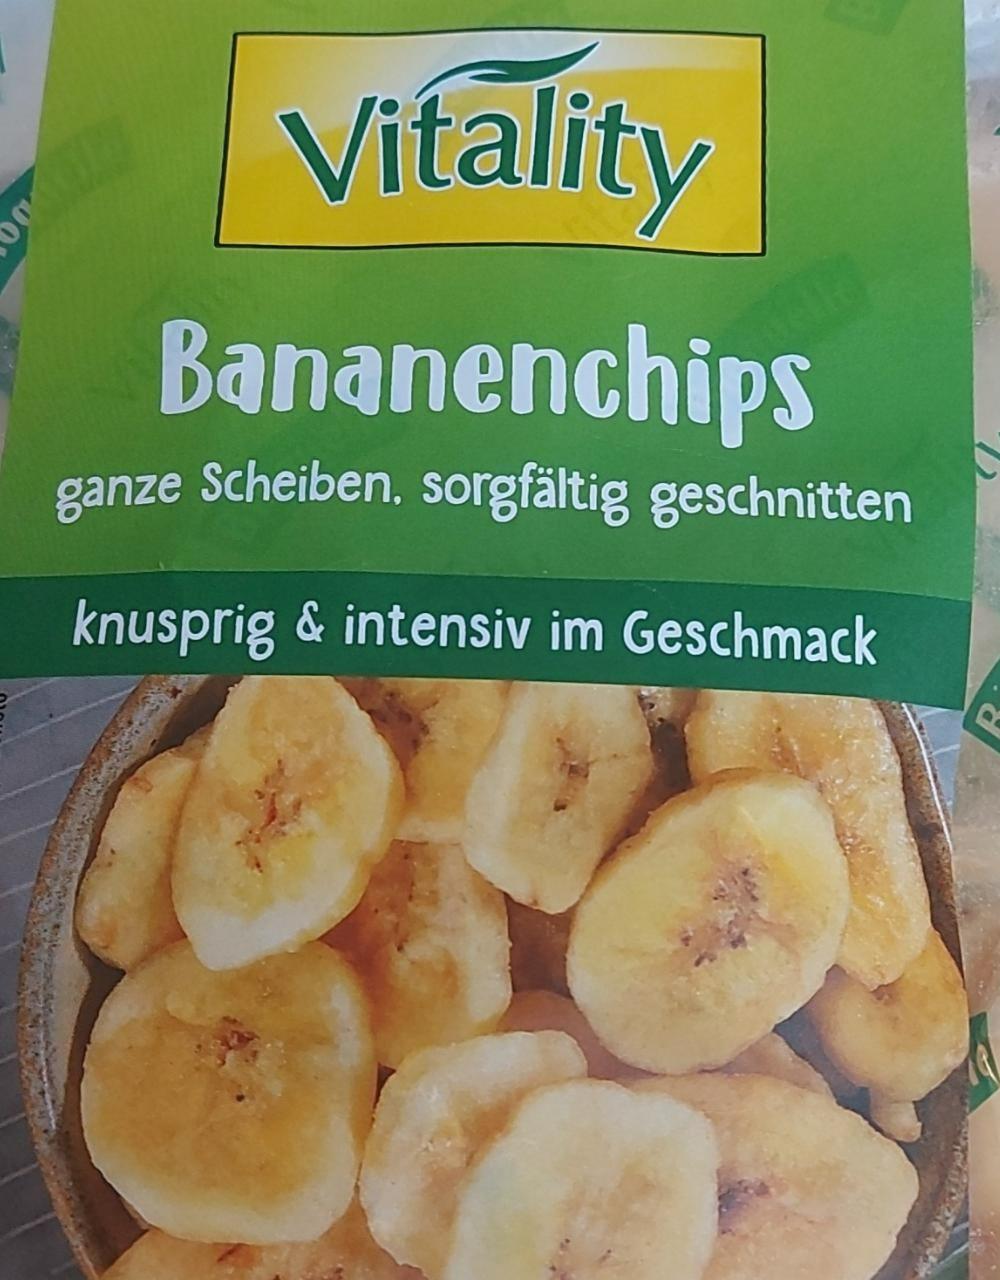 Fotografie - Bananenchips Vitality